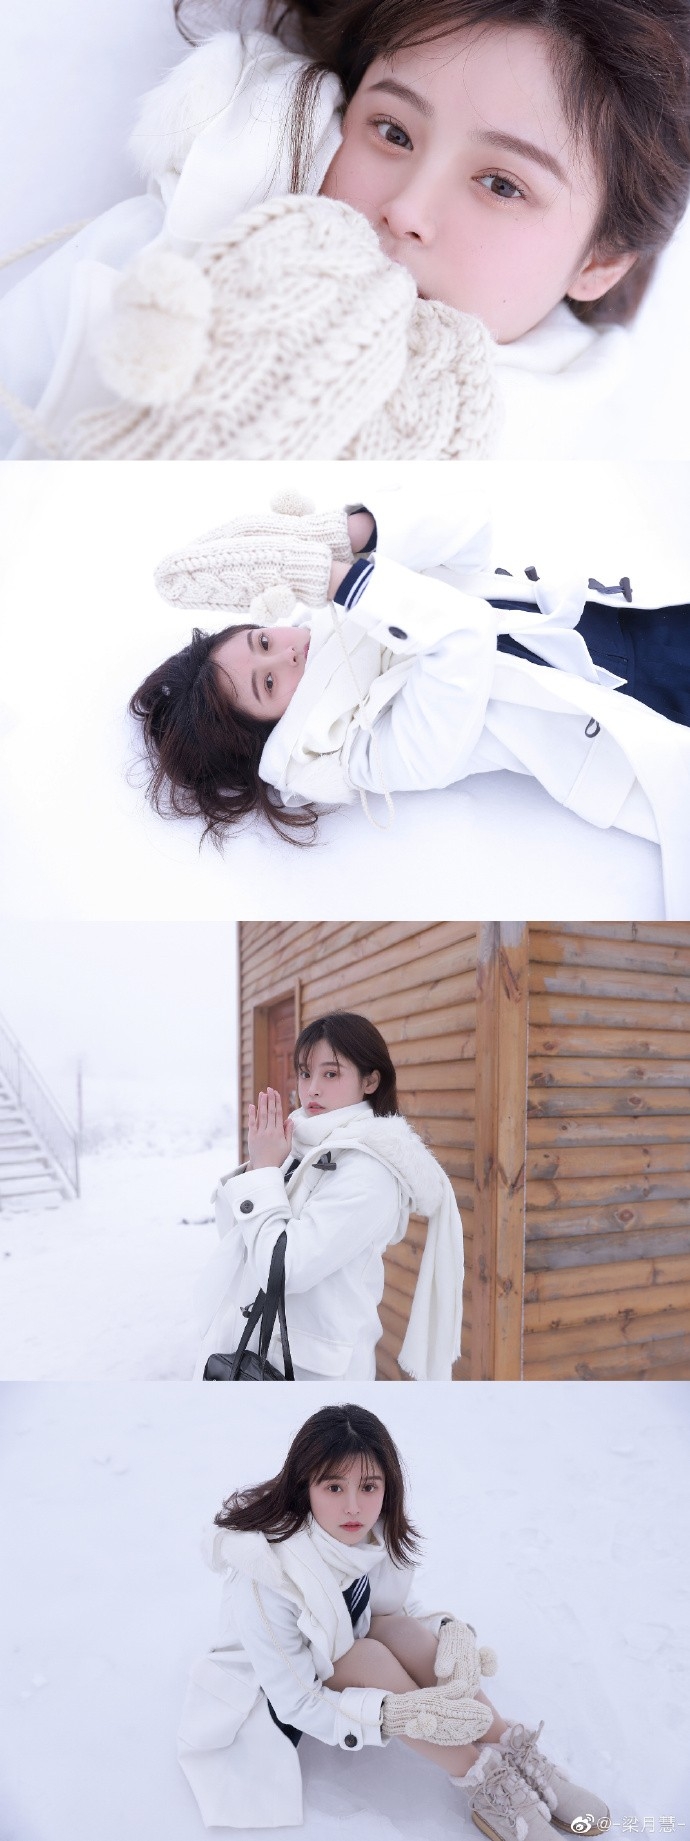 日本少女冬日雪地拍照姿态迷人写真集